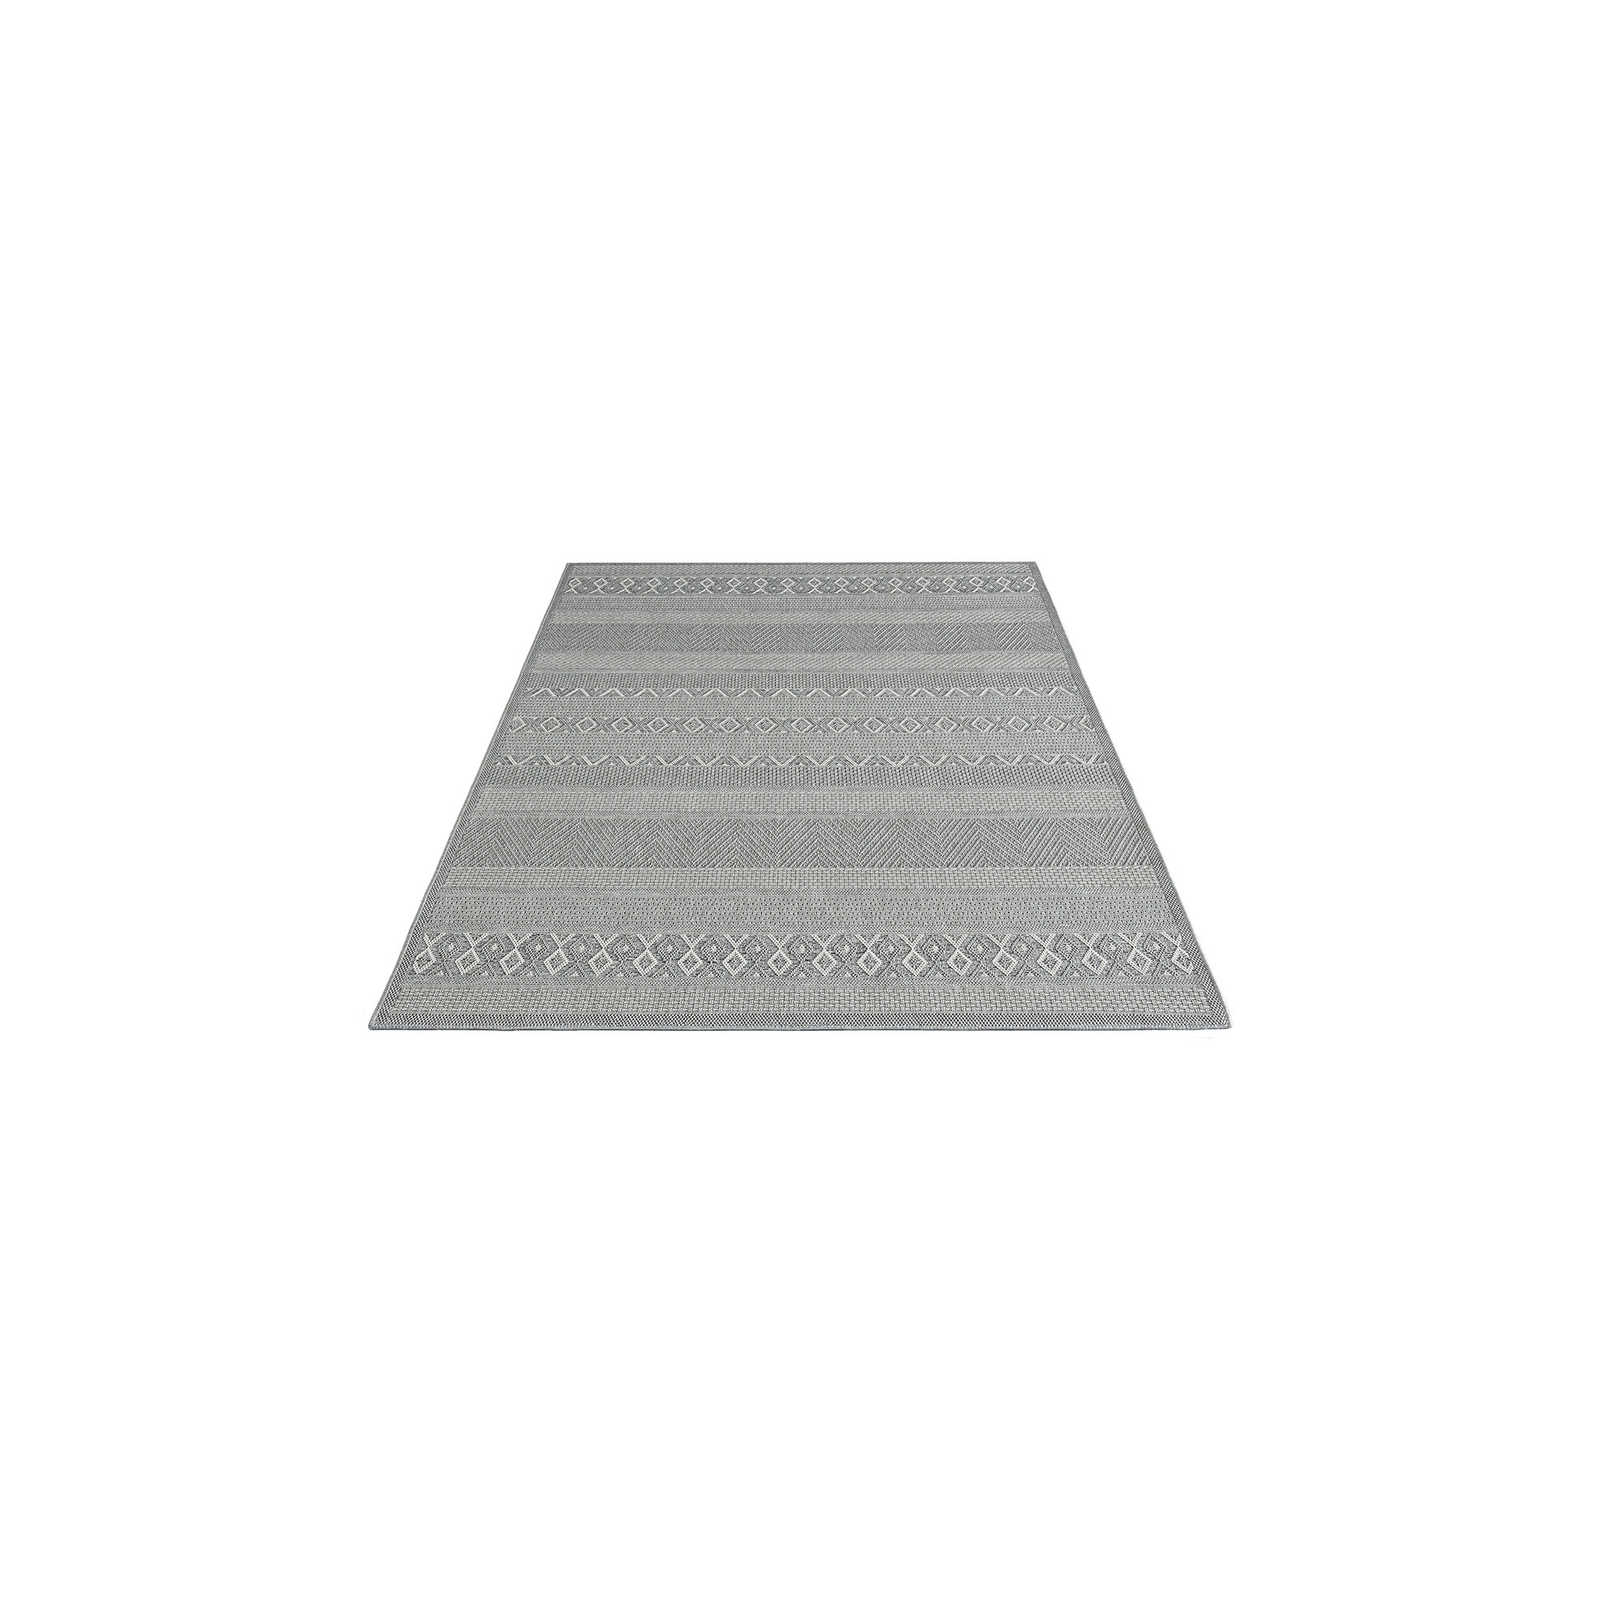 Tappeto da esterno a motivi semplici in grigio - 160 x 120 cm
